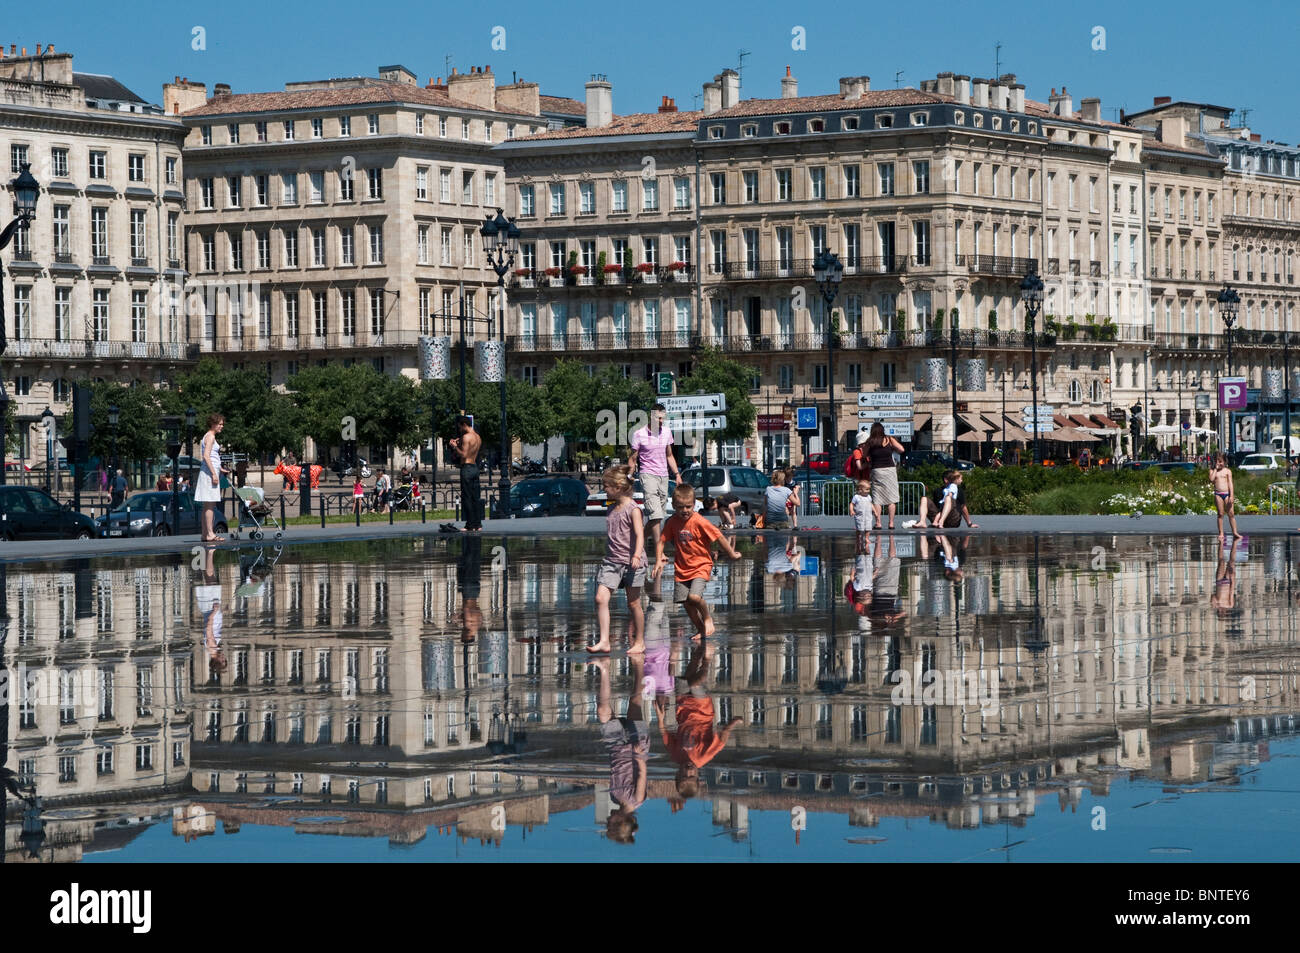 Le miroir de l'eau en face de la place de la Bourse, Bordeaux, France Banque D'Images